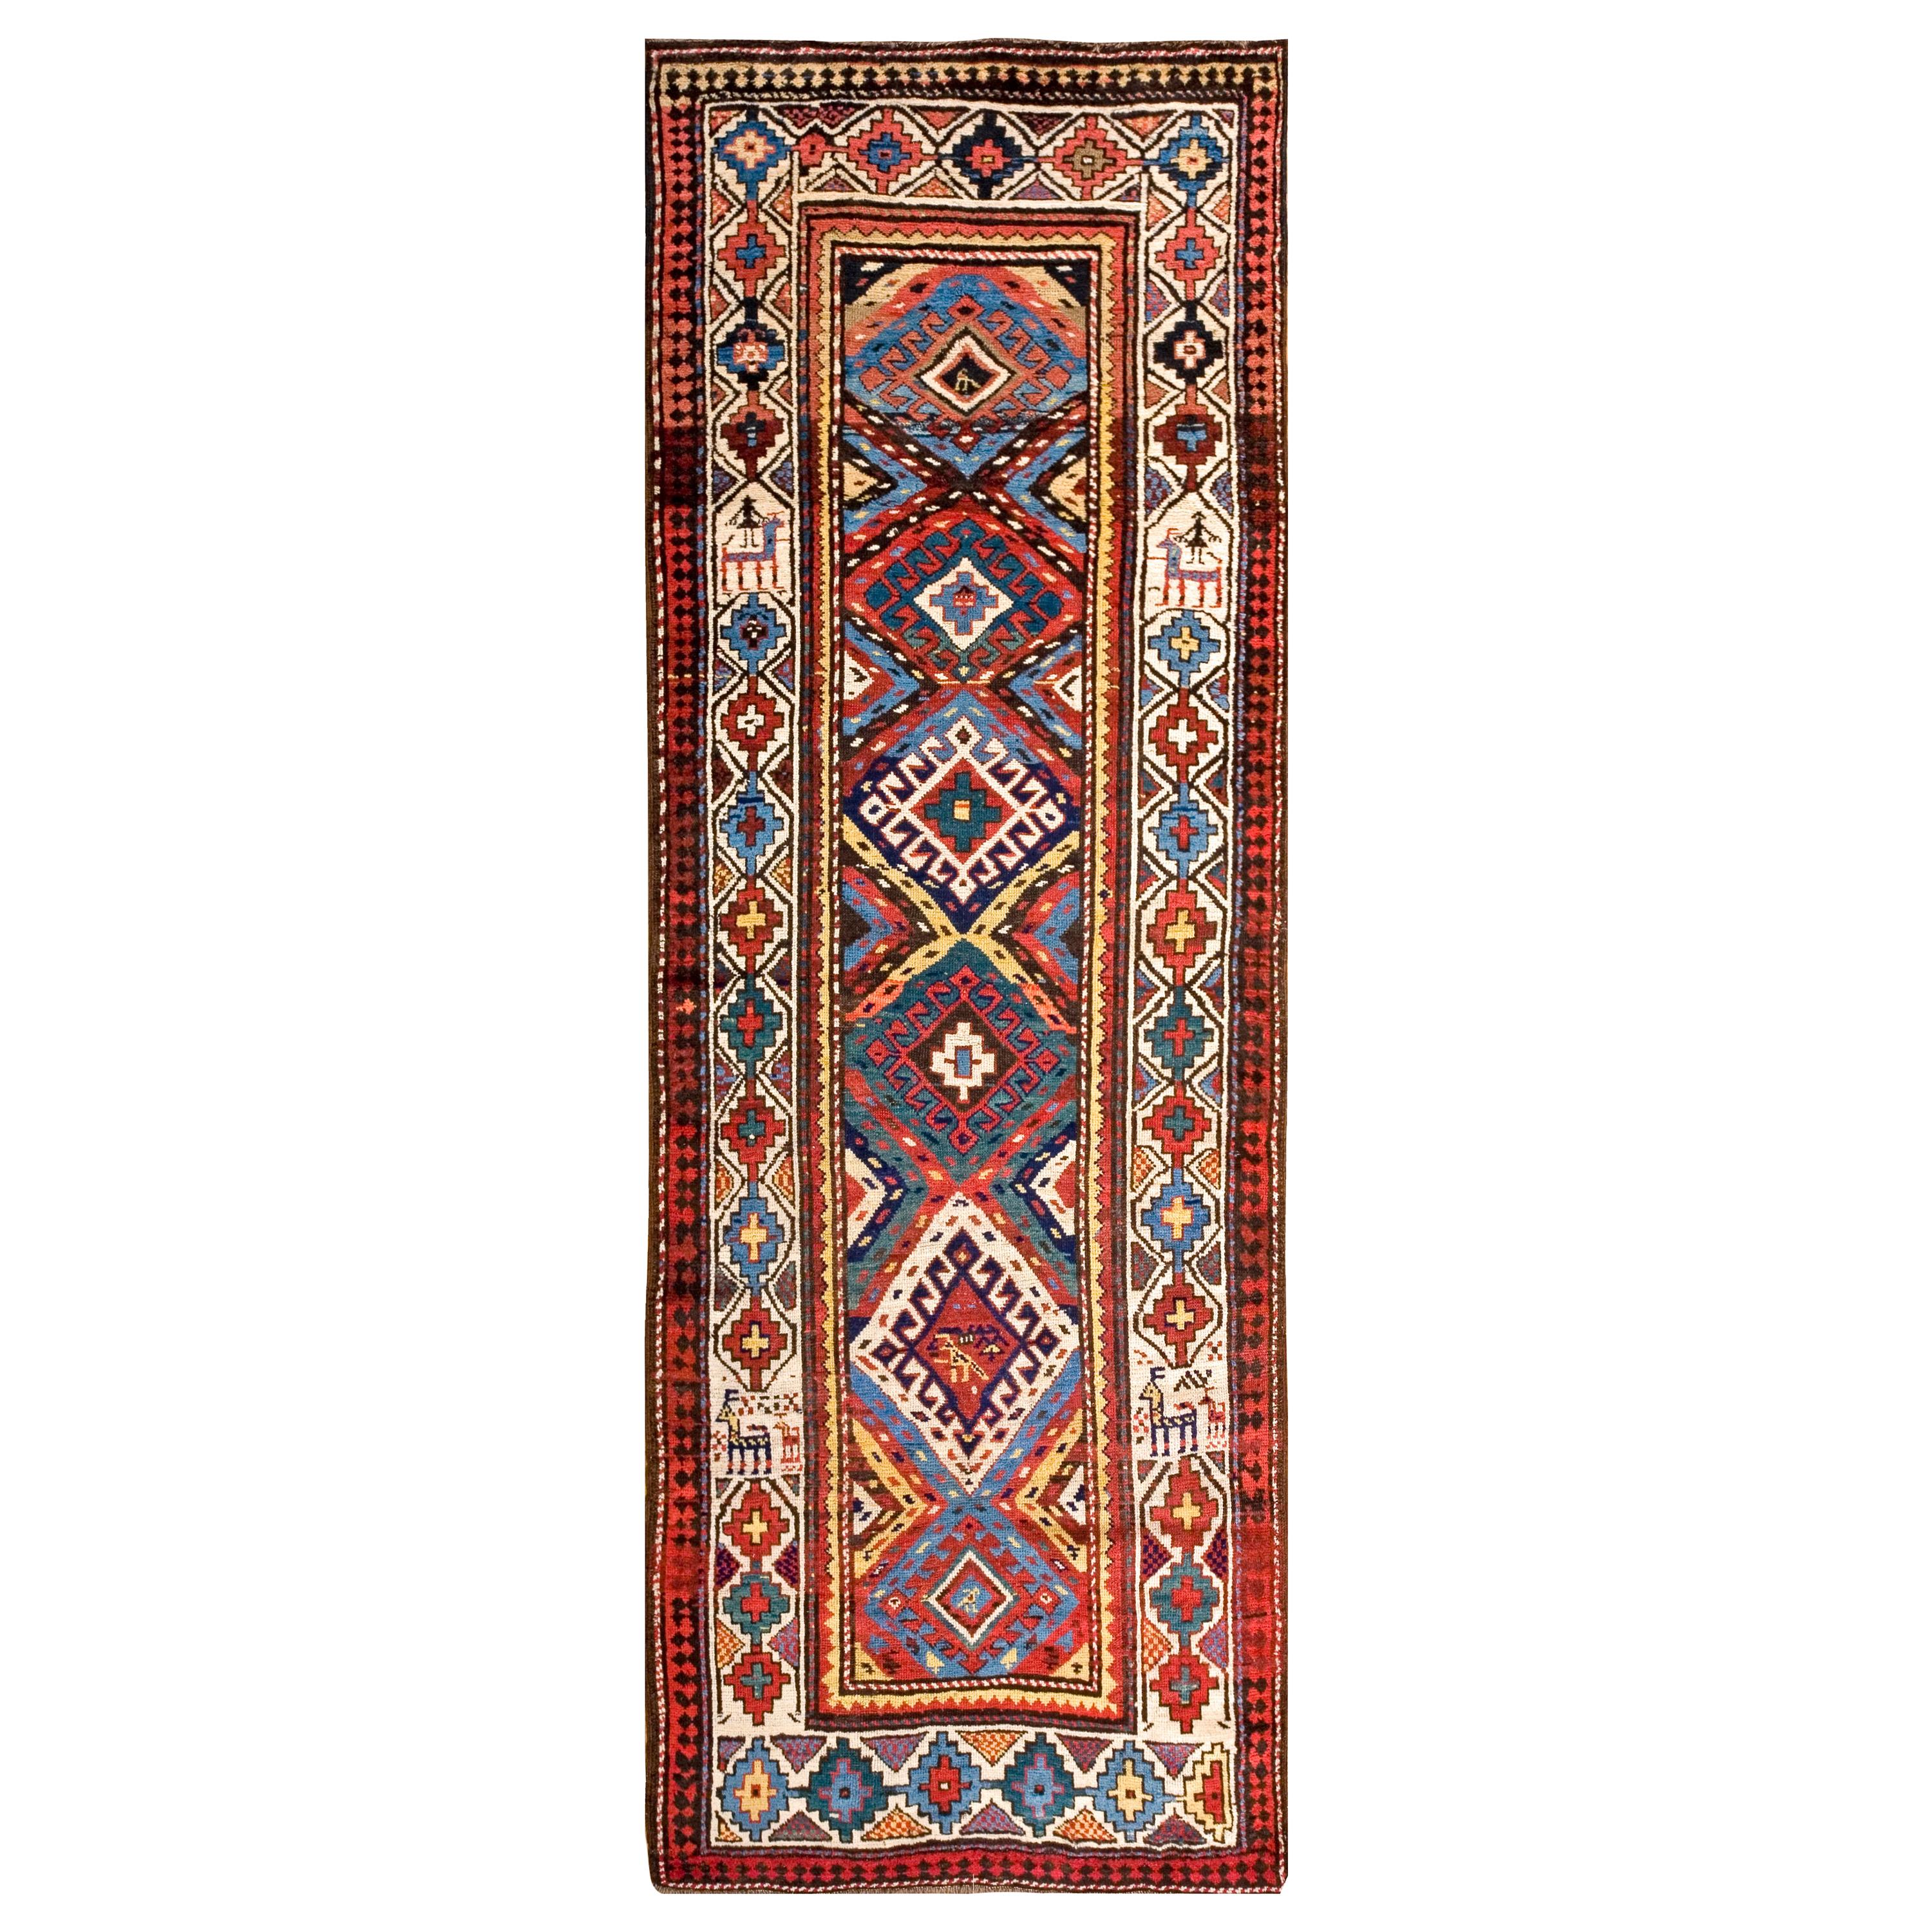 19th Century Caucasian Moghan Carpet ( 3'5" x 9'5" - 104 x 287 )